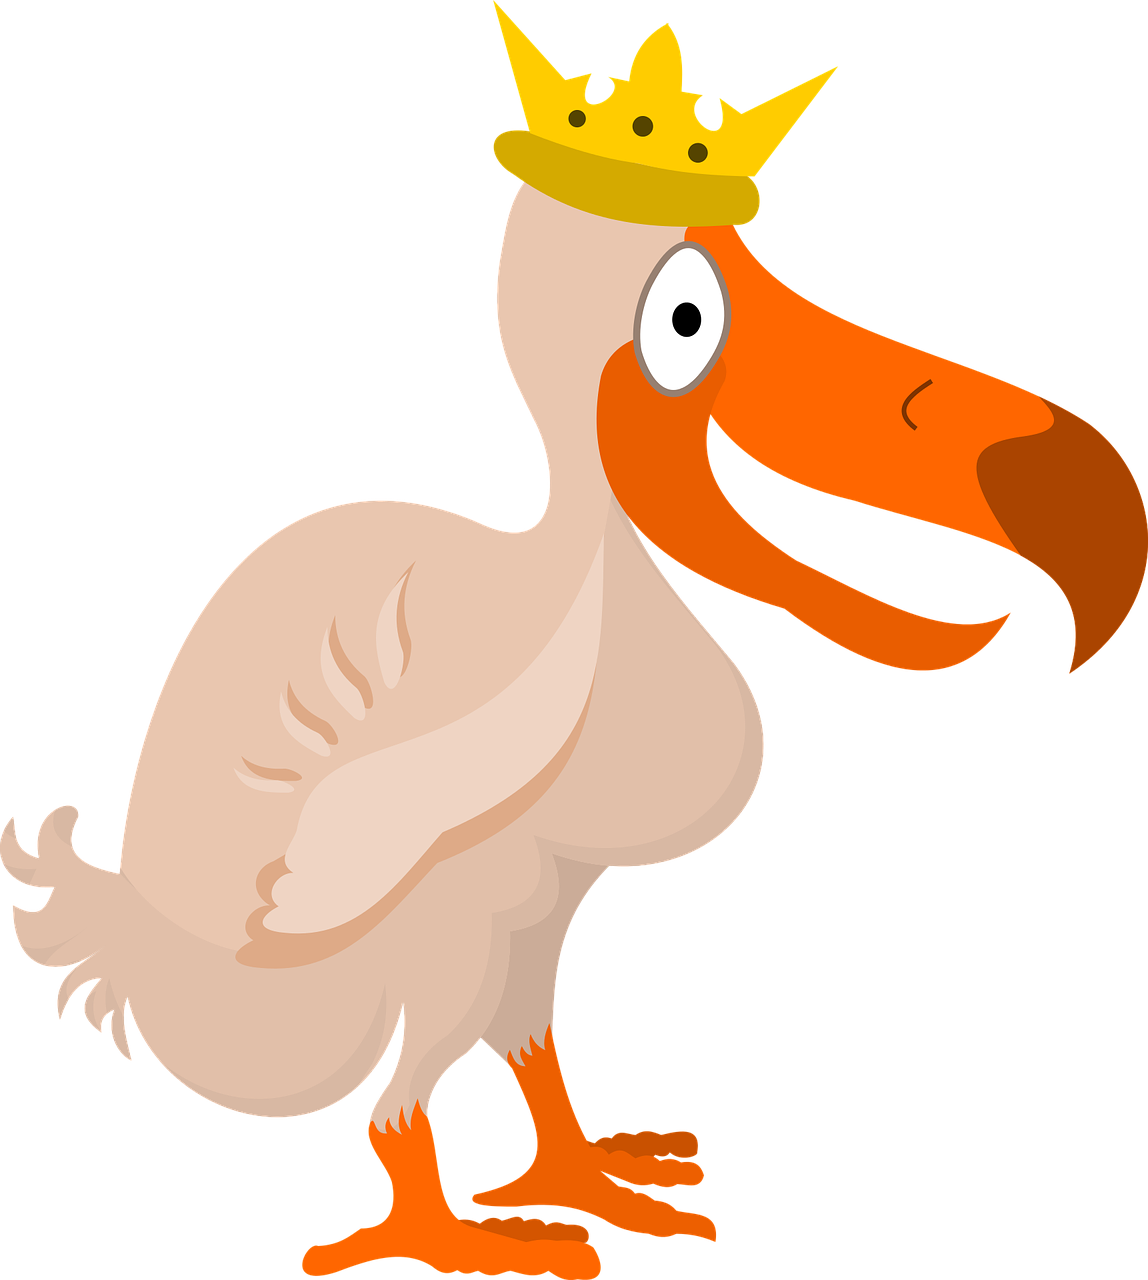 Dodo Bird With A Crown